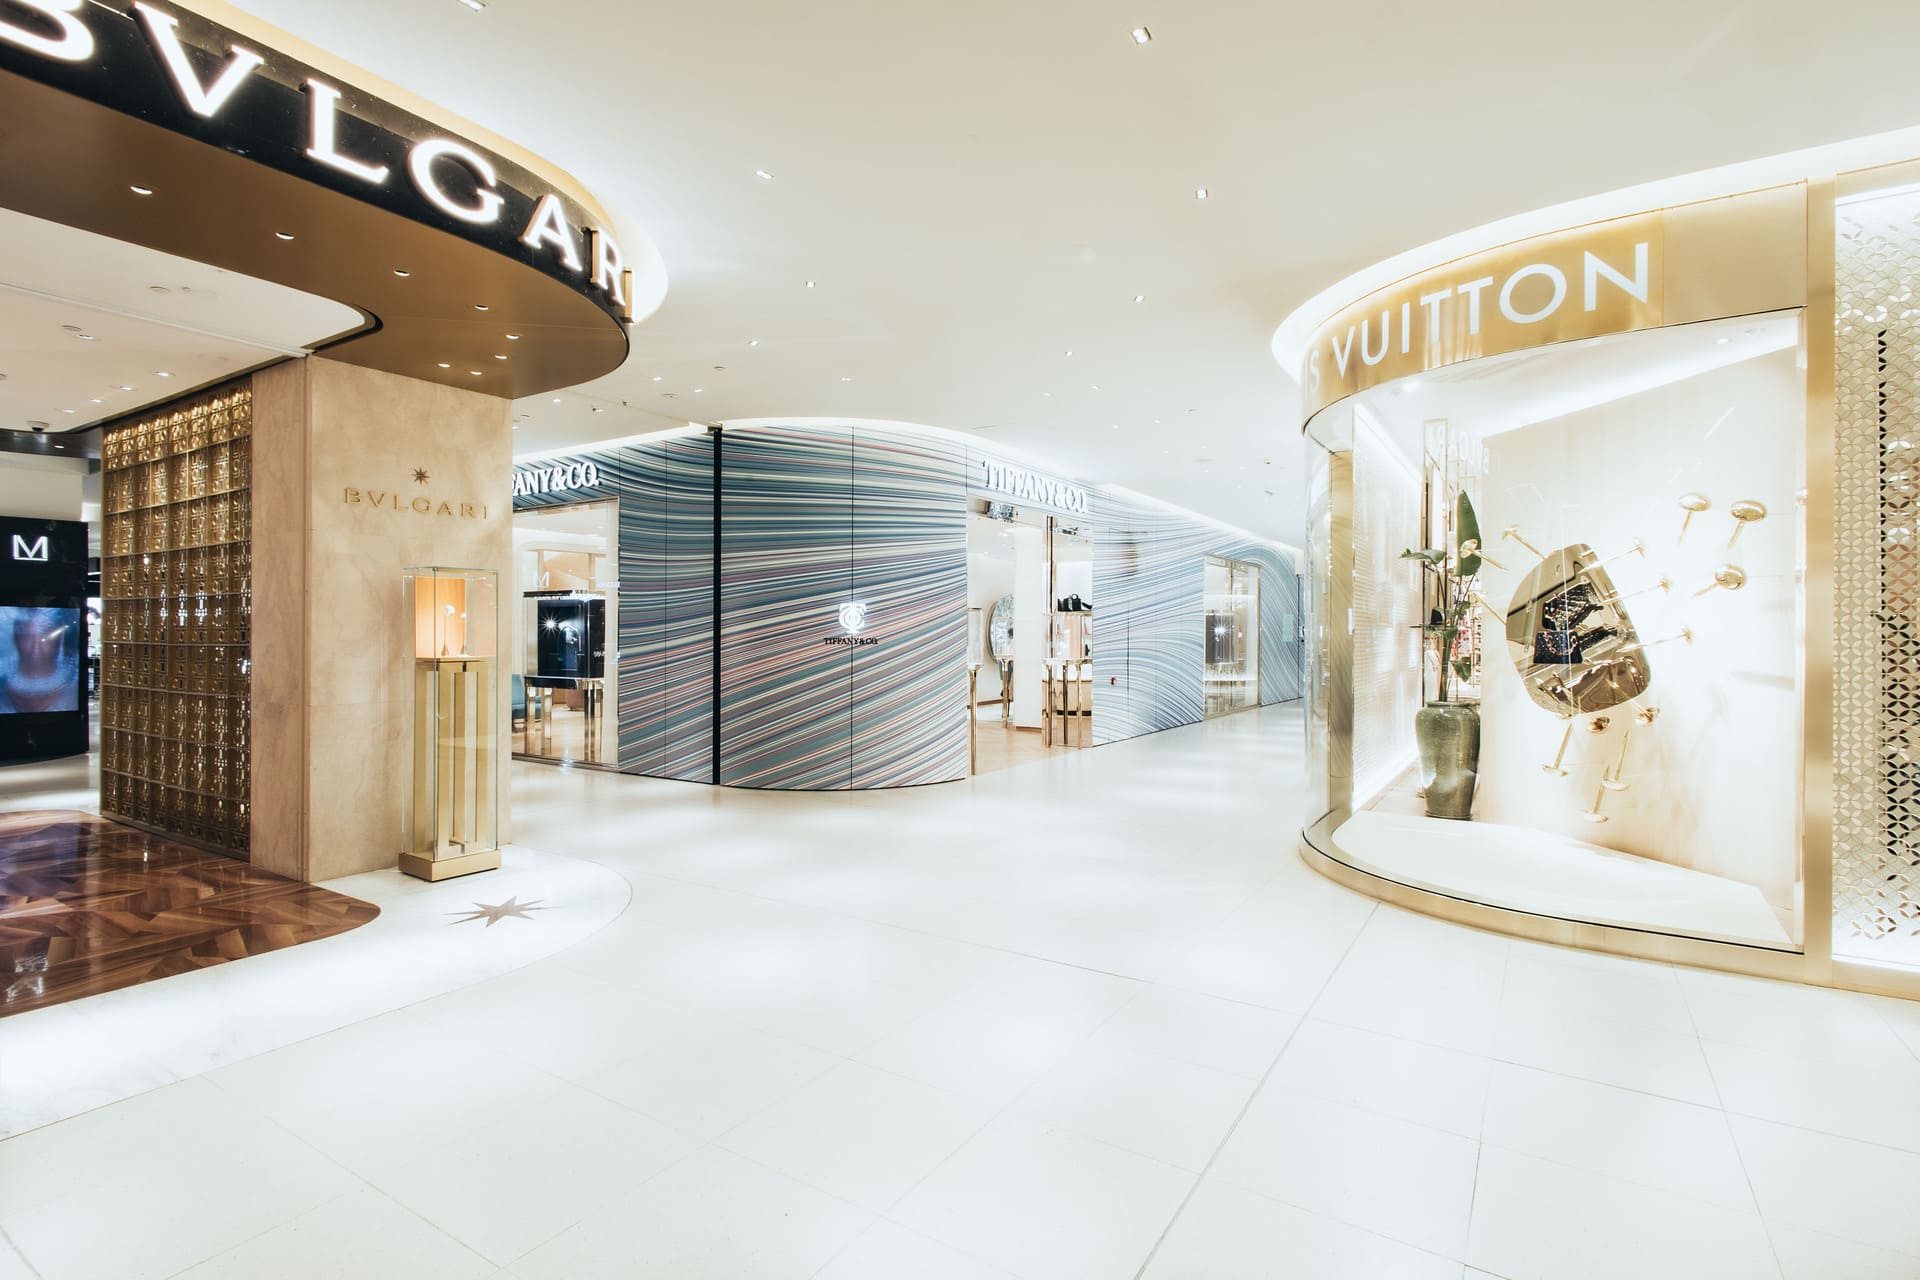 Louis Vuitton Barcelona El Corte Inglés store, Spain